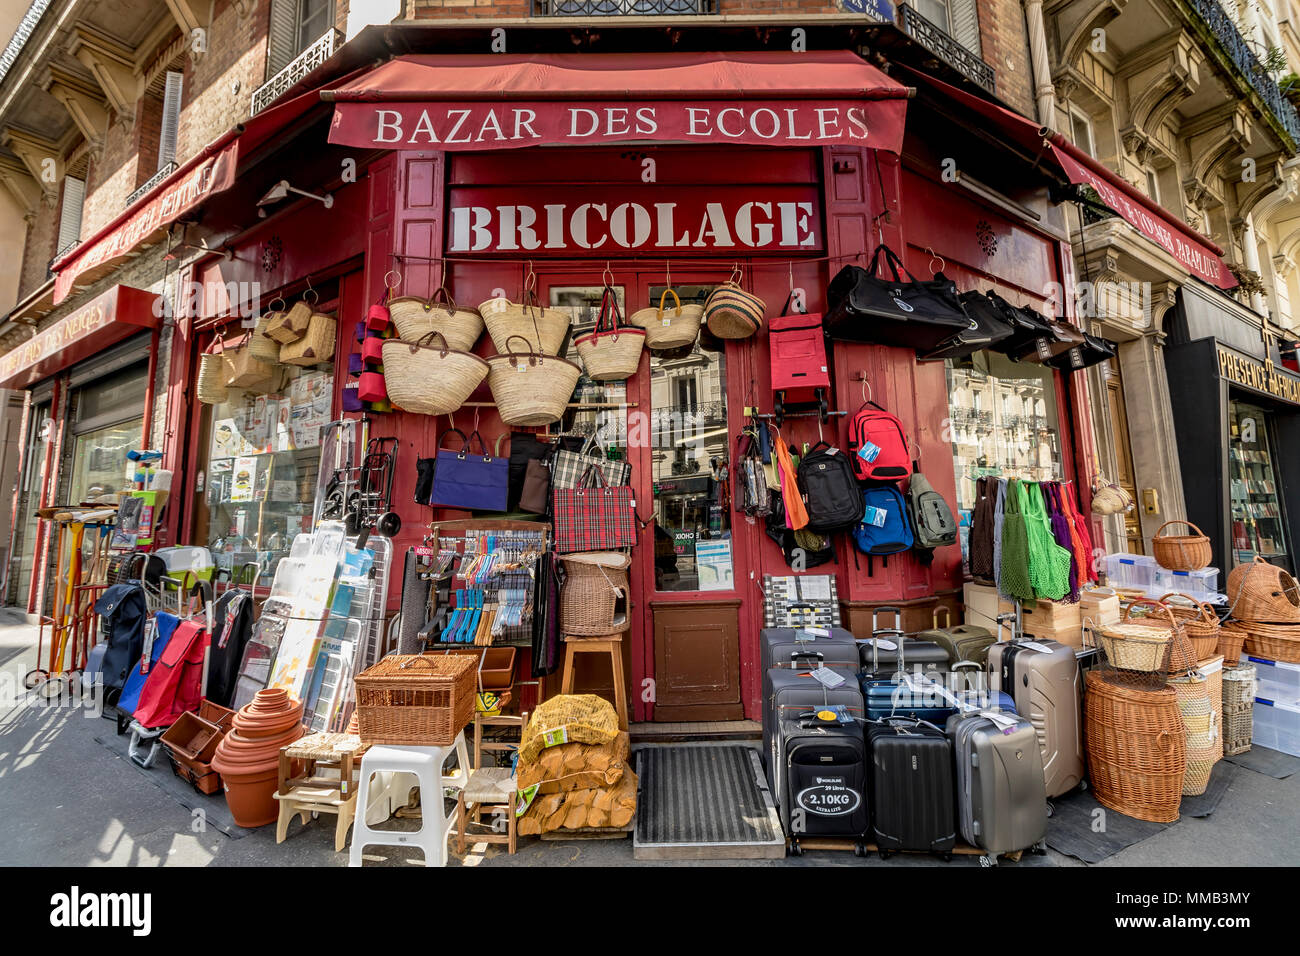 Vielzahl von Waren im Bazar des Ecoles ein Hardware Shop Verkauf von Körben und verschiedene andere Waren 20 Rue de la Montagne Sainte Geneviève Paris, Frankreich Stockfoto